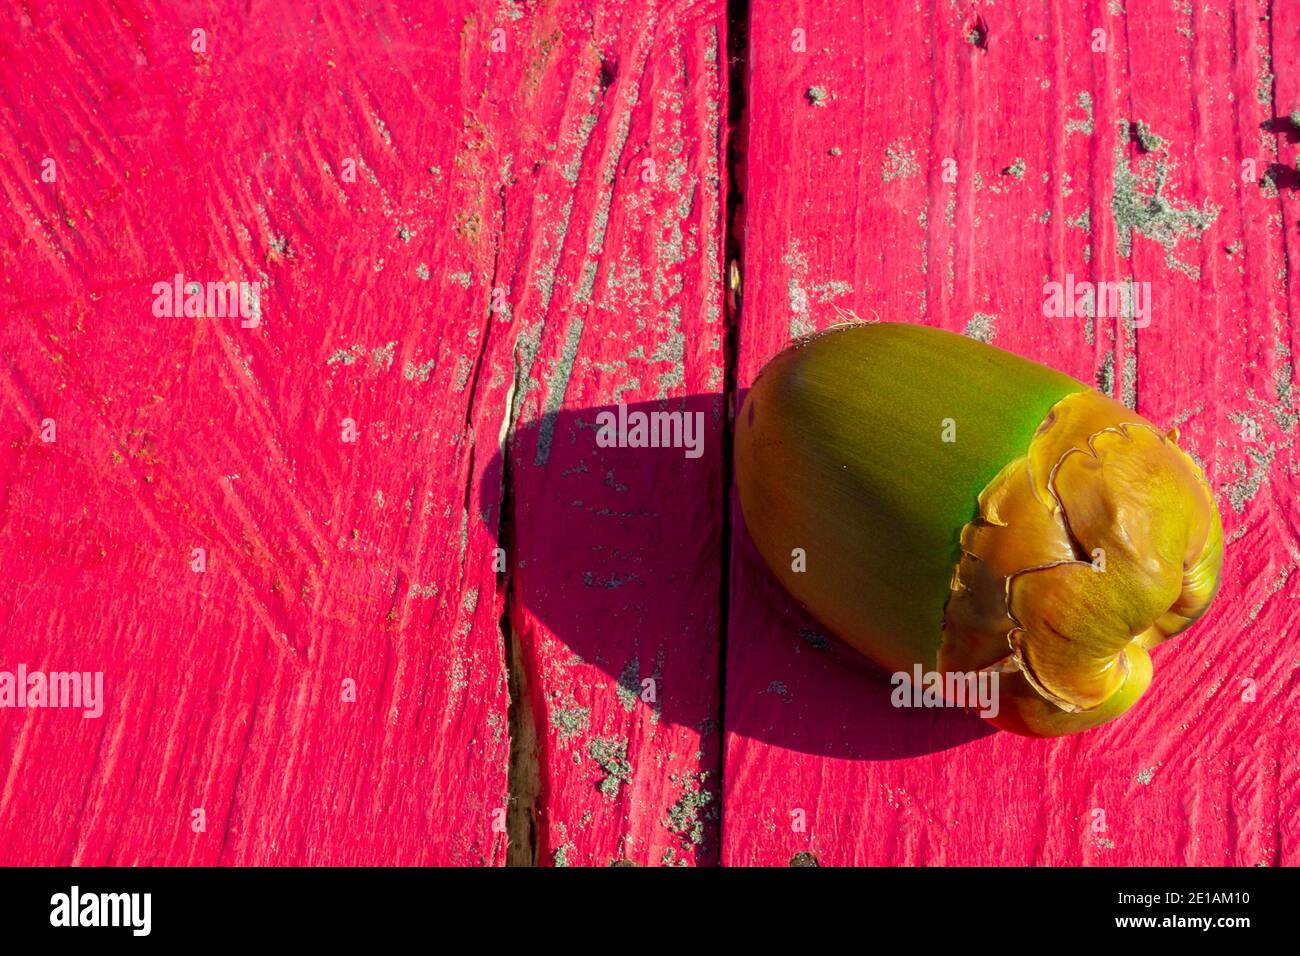 Conception graphique faite par la nature elle-même, une composition de cococotier agréable une table en bois rose saturé Banque D'Images